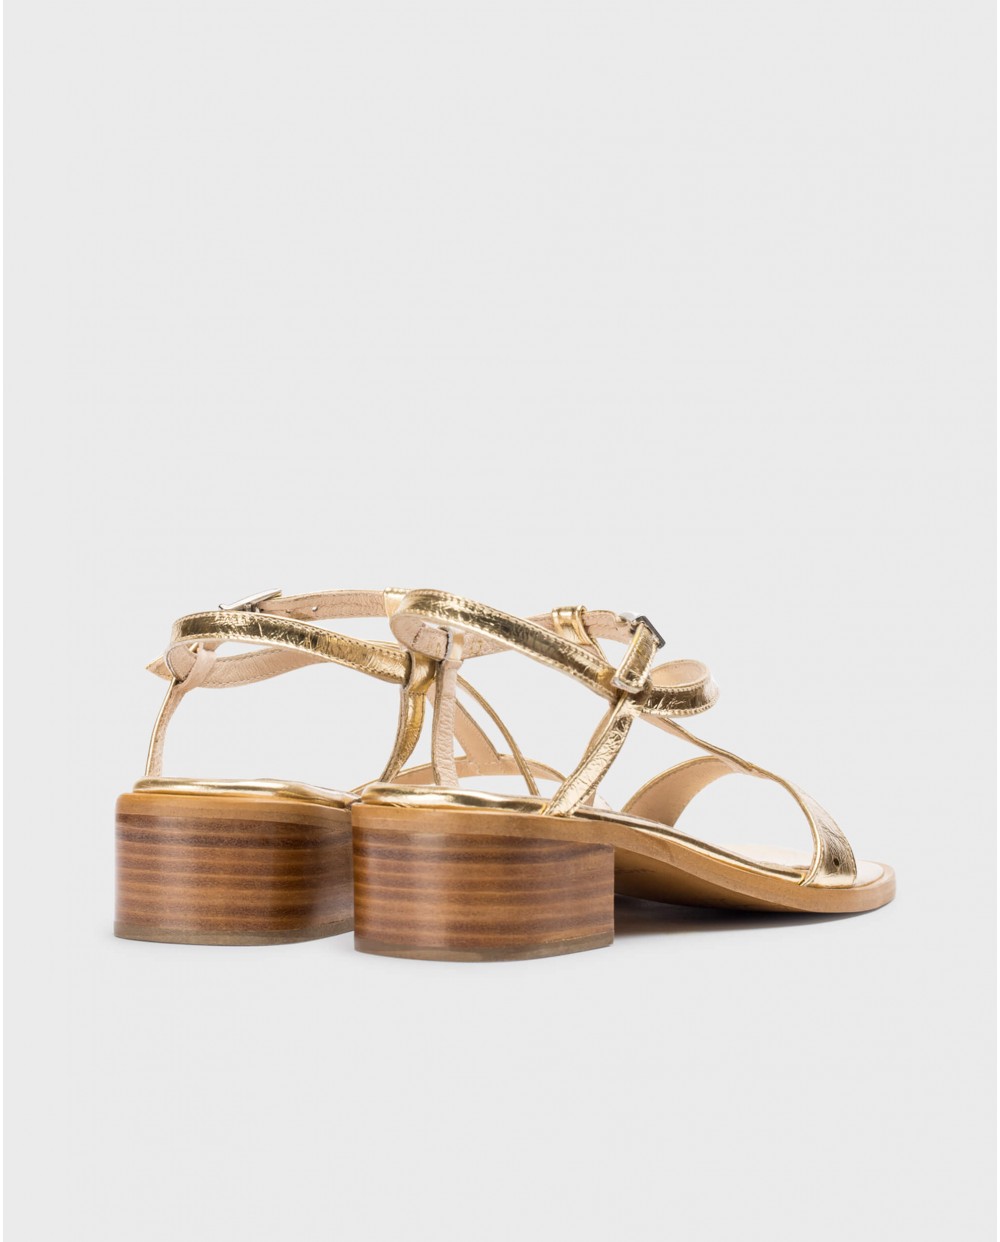 Gold Aurora sandals